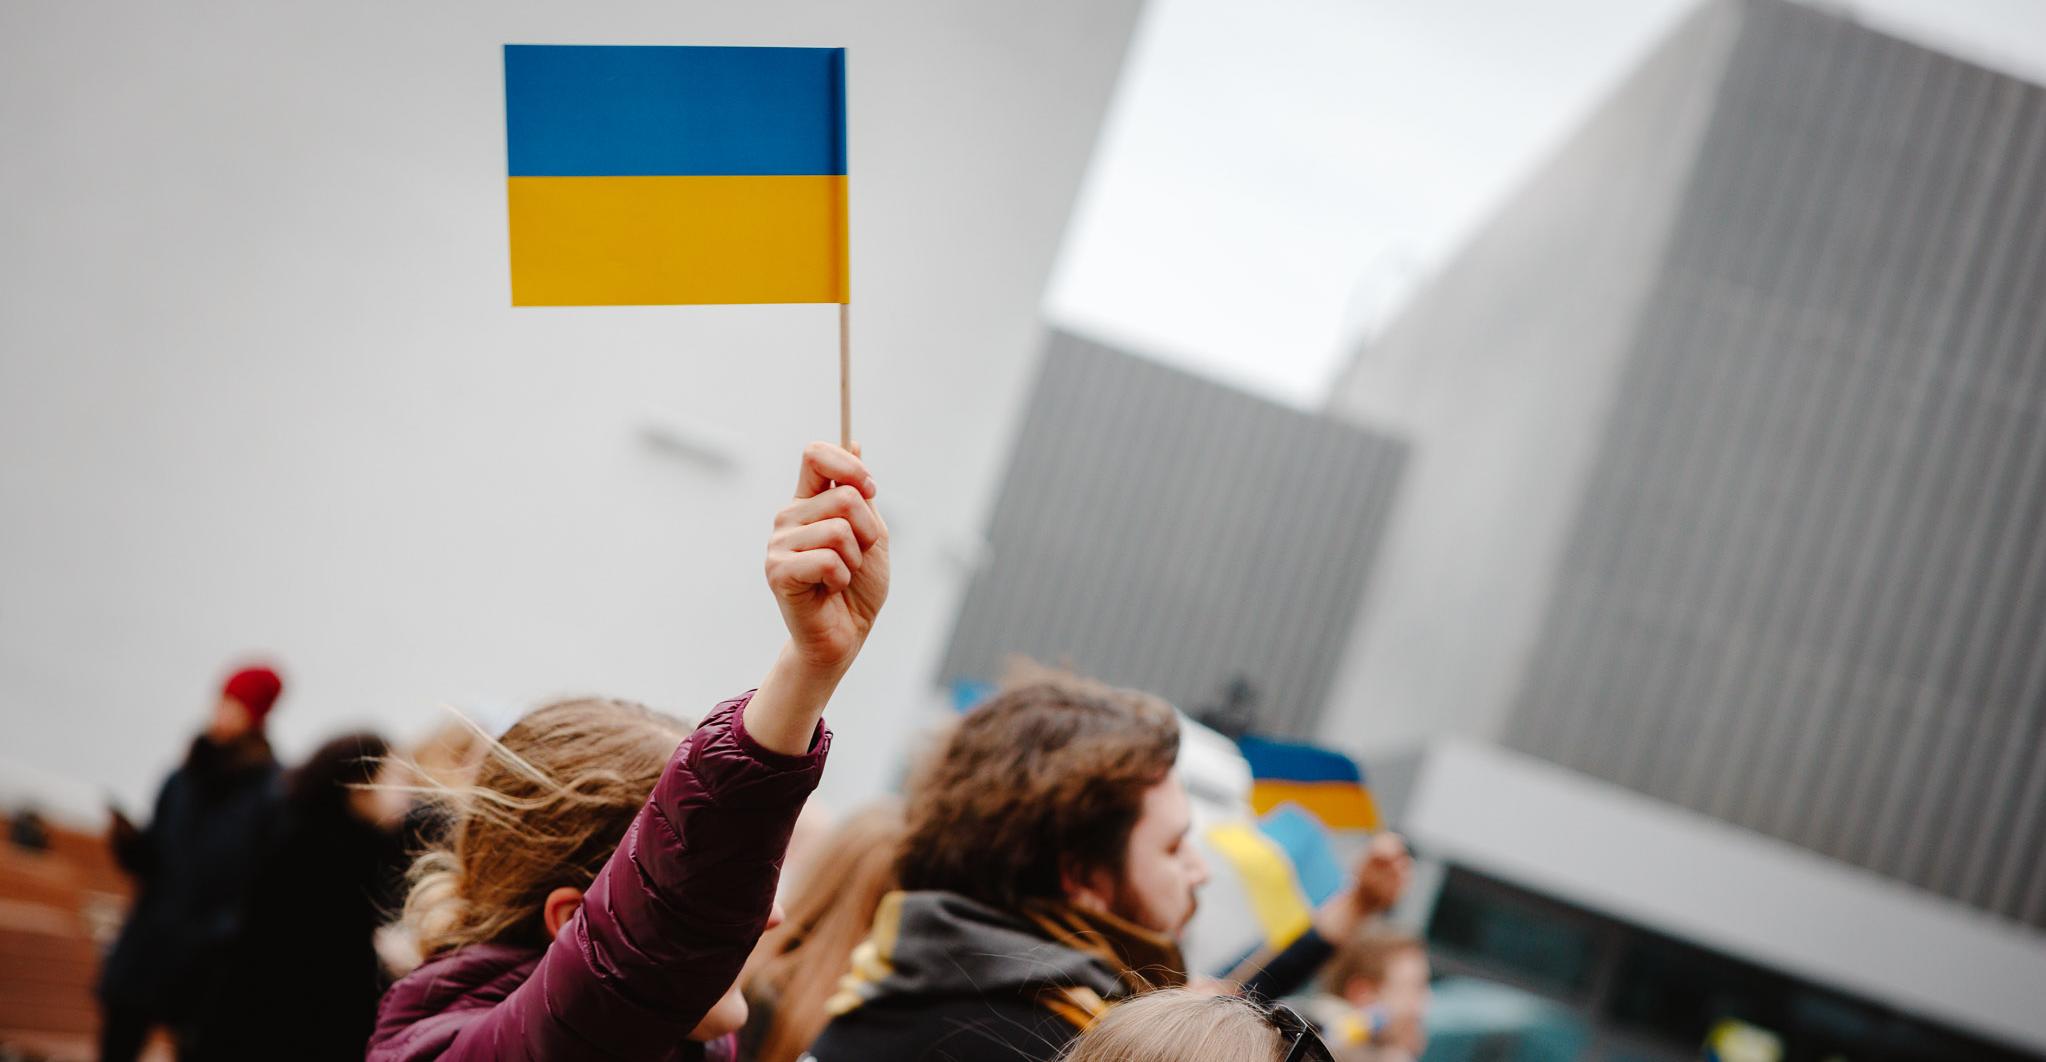 Fotol hoiab inimene väikest Ukraina lippu